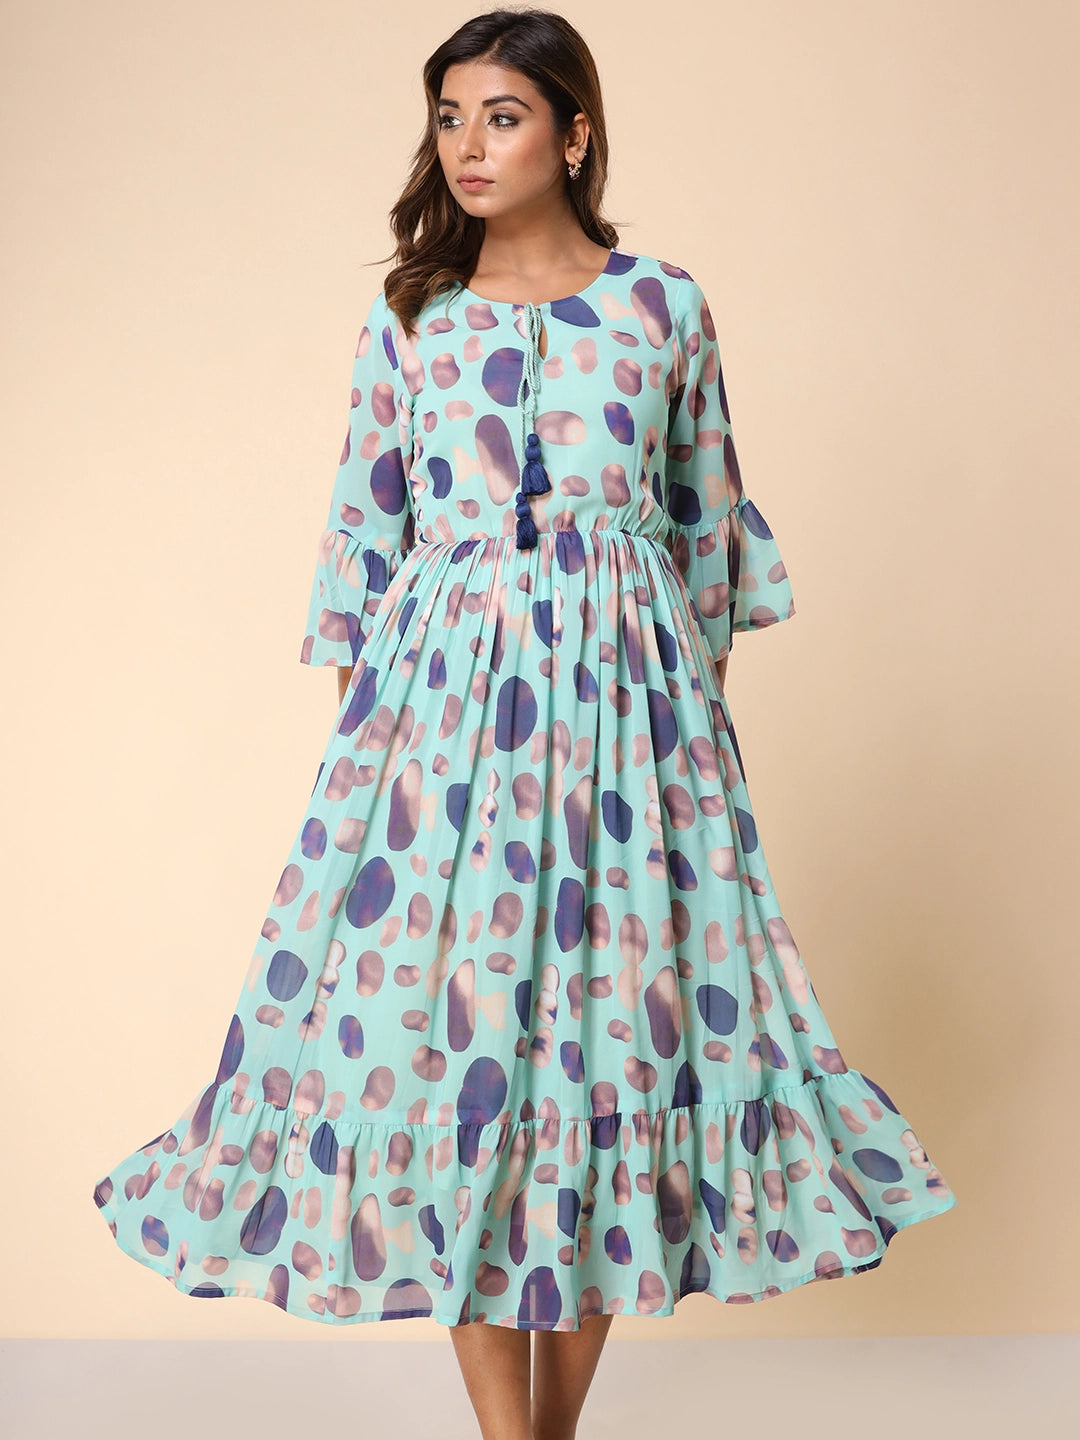 Stylish Printed Dress